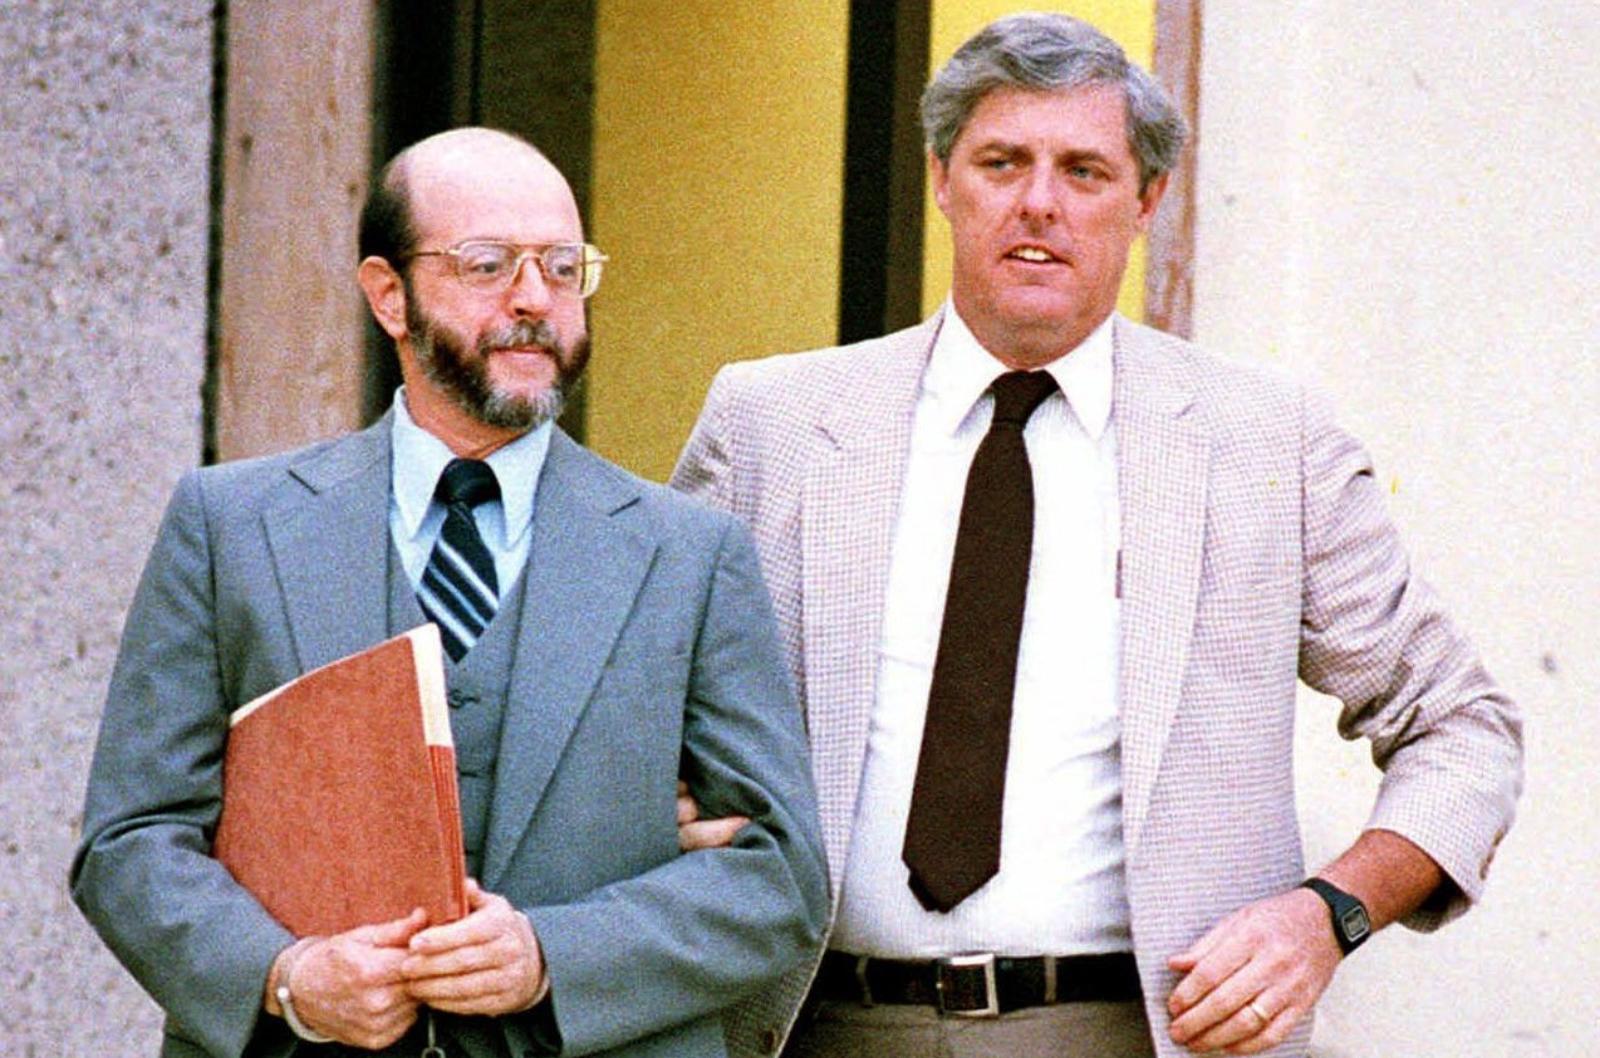 Уокер во время судебного заседания в 1985 году.